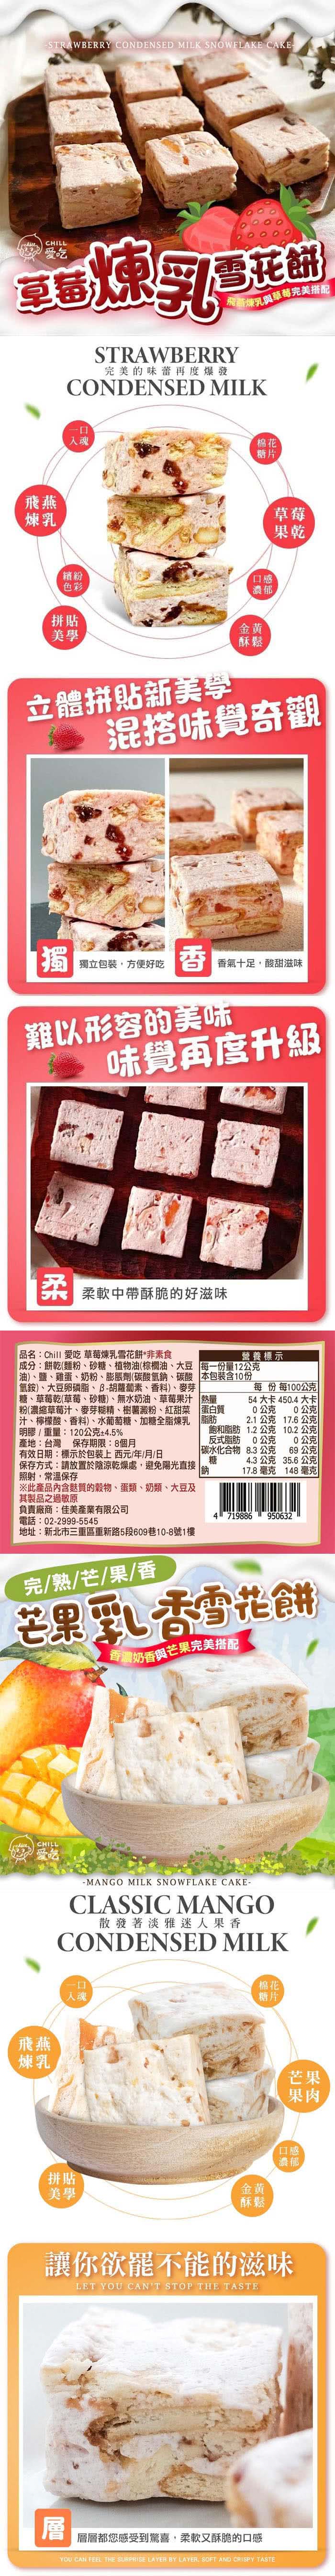 CHILL愛吃 繽紛水果雪花餅x18盒(120g/盒-草莓/